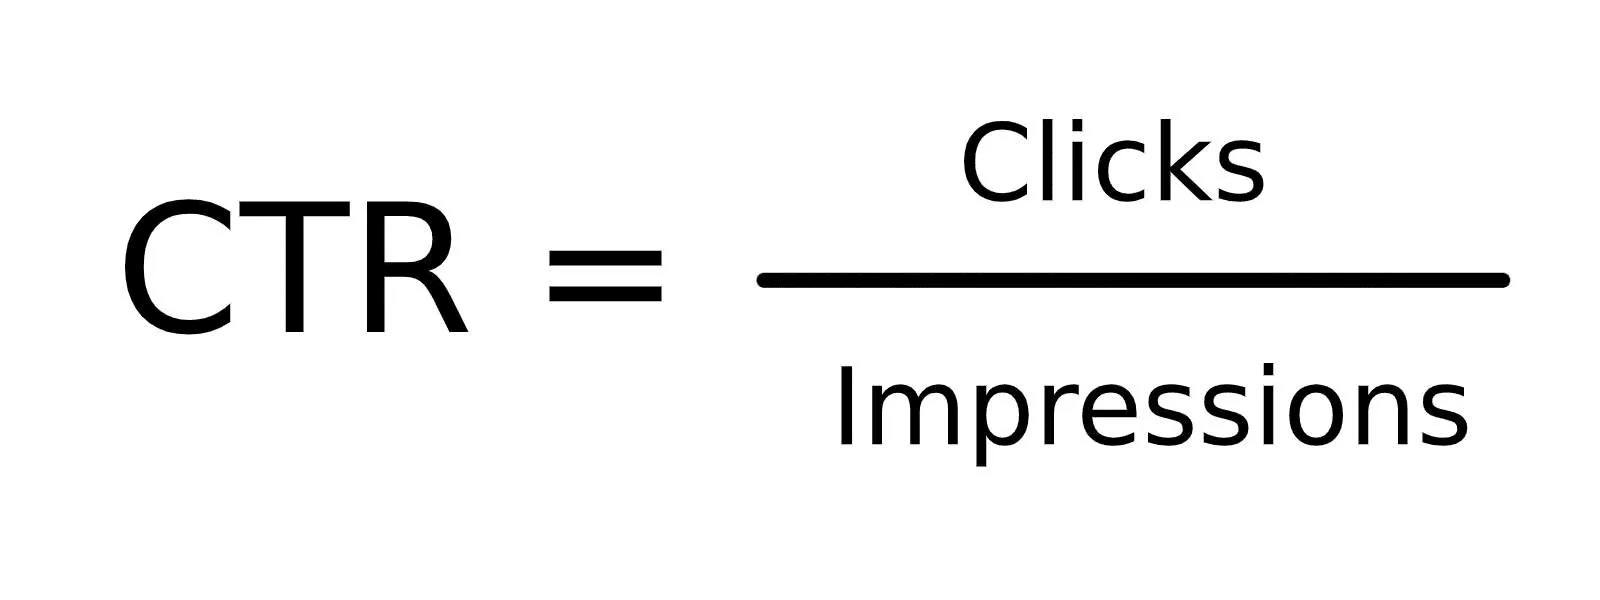 La formula per calcolare il CTR: clic diviso impressioni.